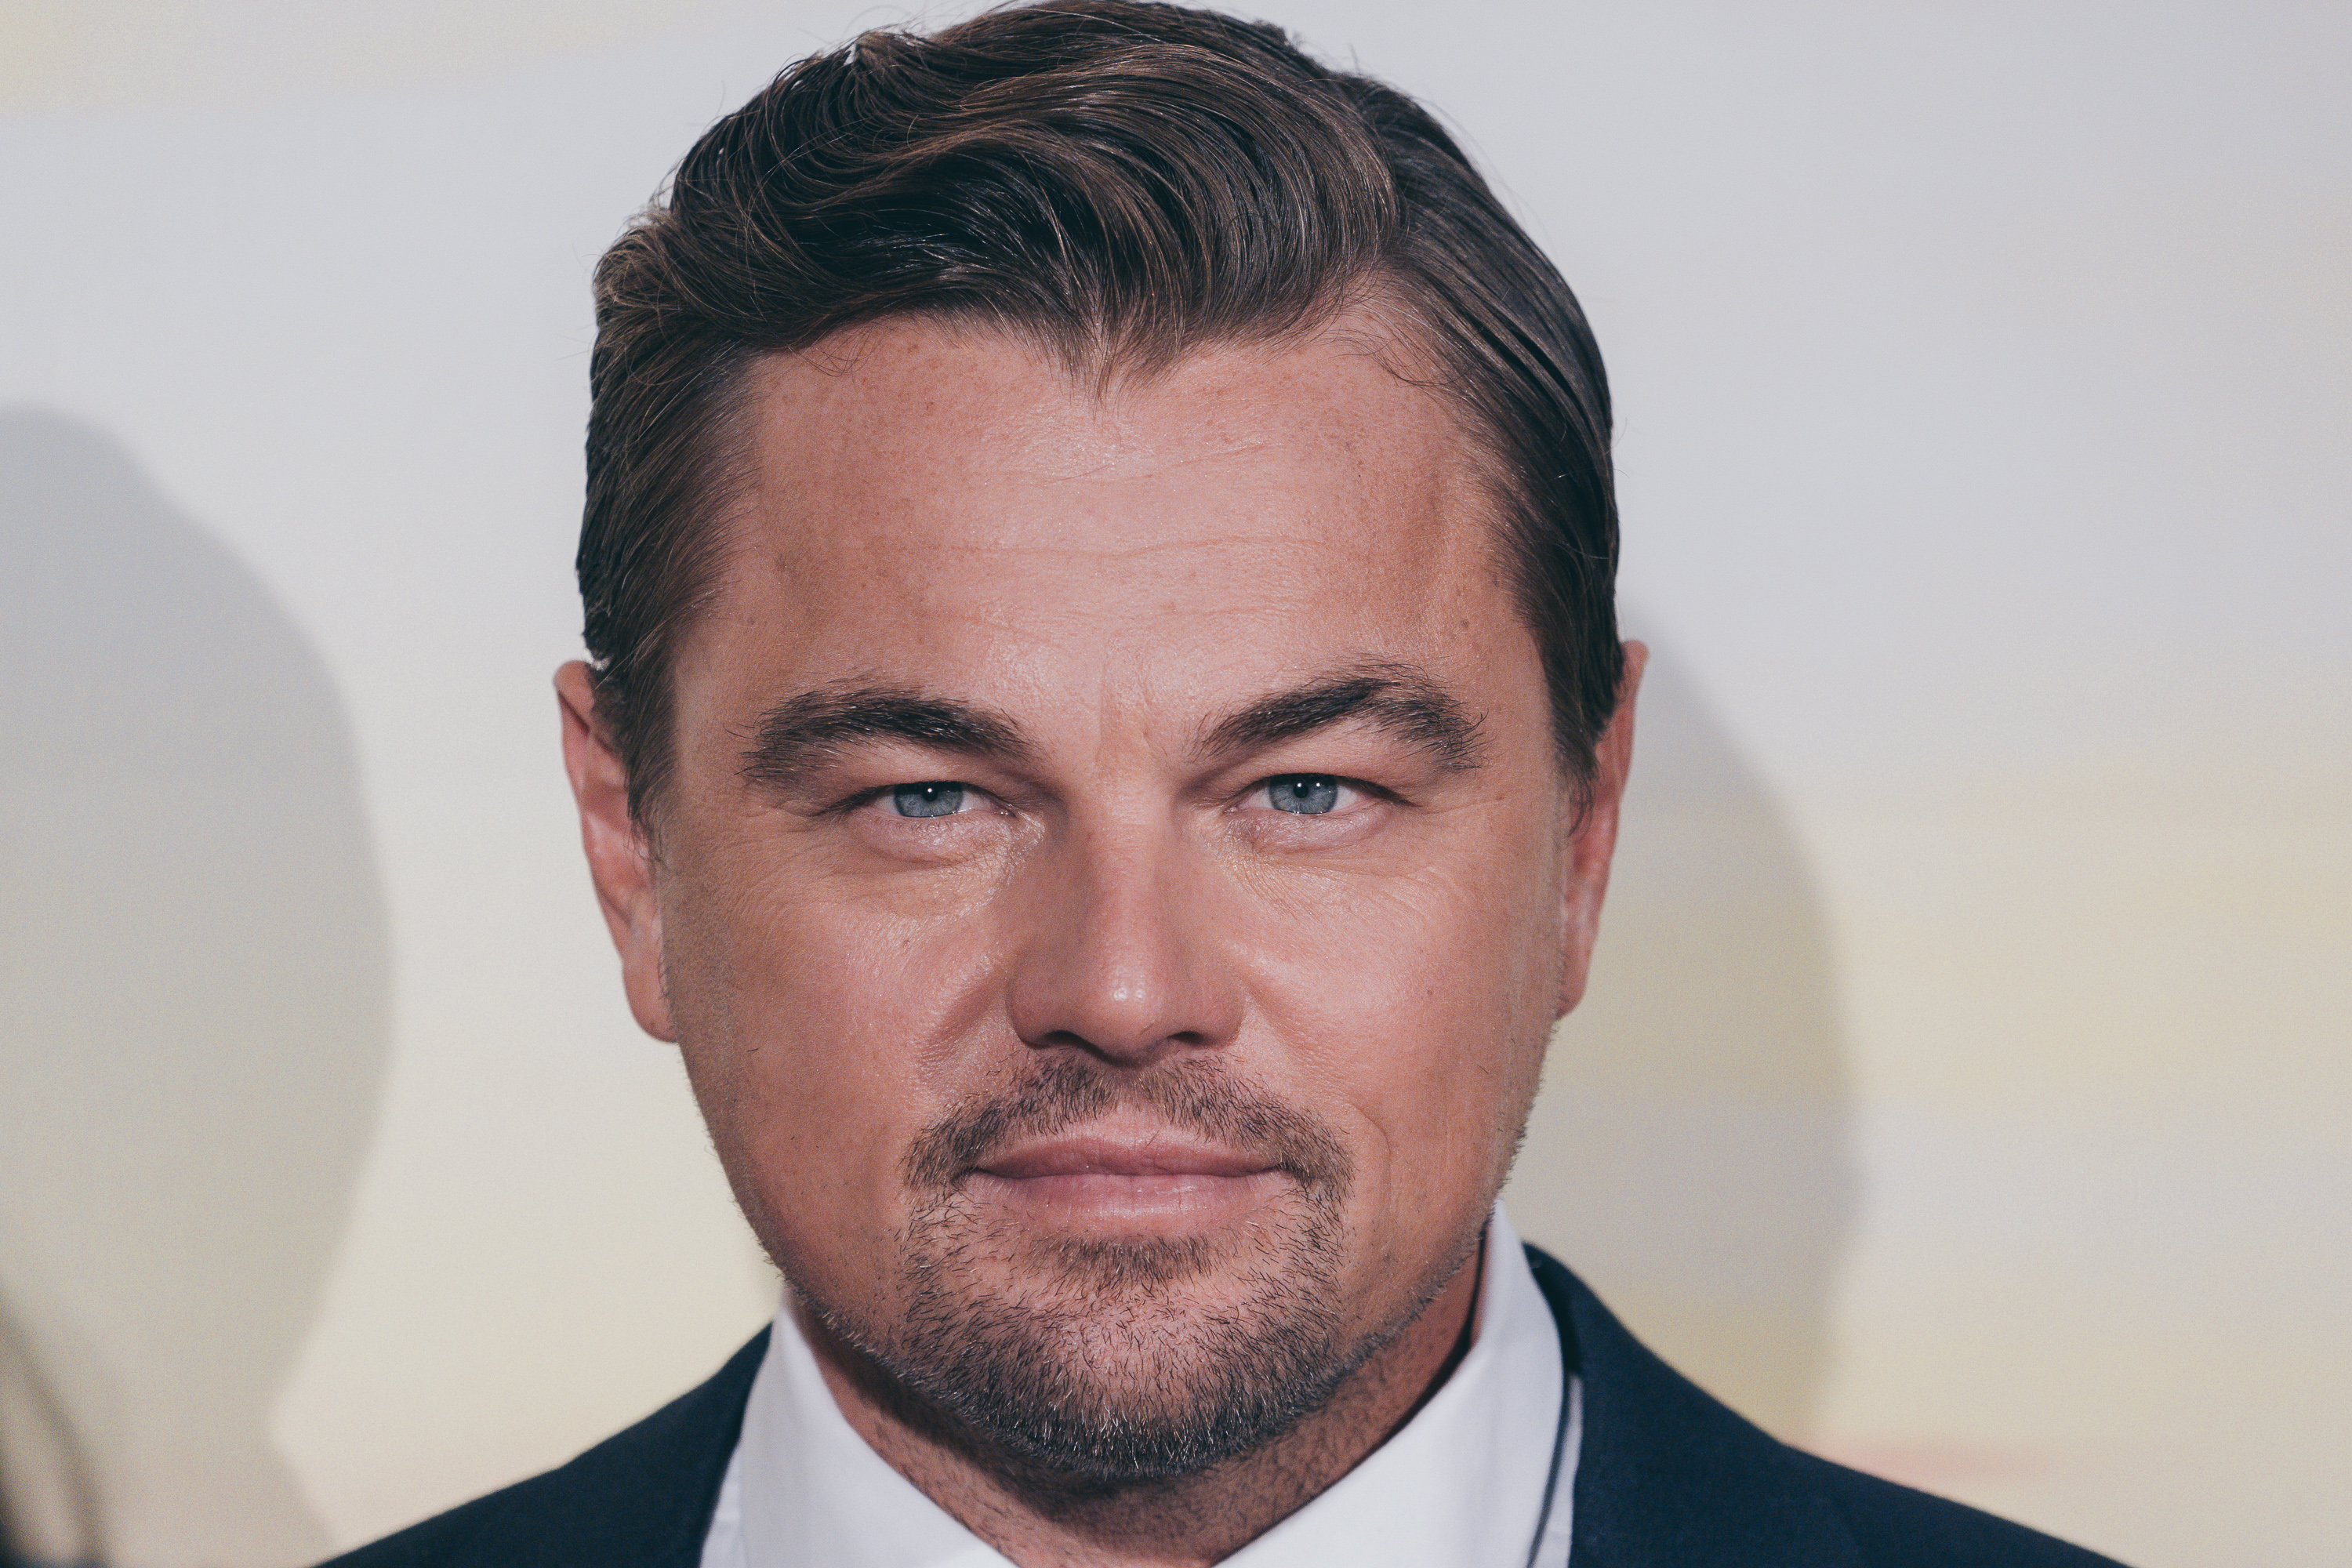 Leonardo DiCaprio asiste al estreno de "Once Upon a Time in Hollywood" el 2 de agosto de 2019 en Roma, Italia | Foto: Getty Images